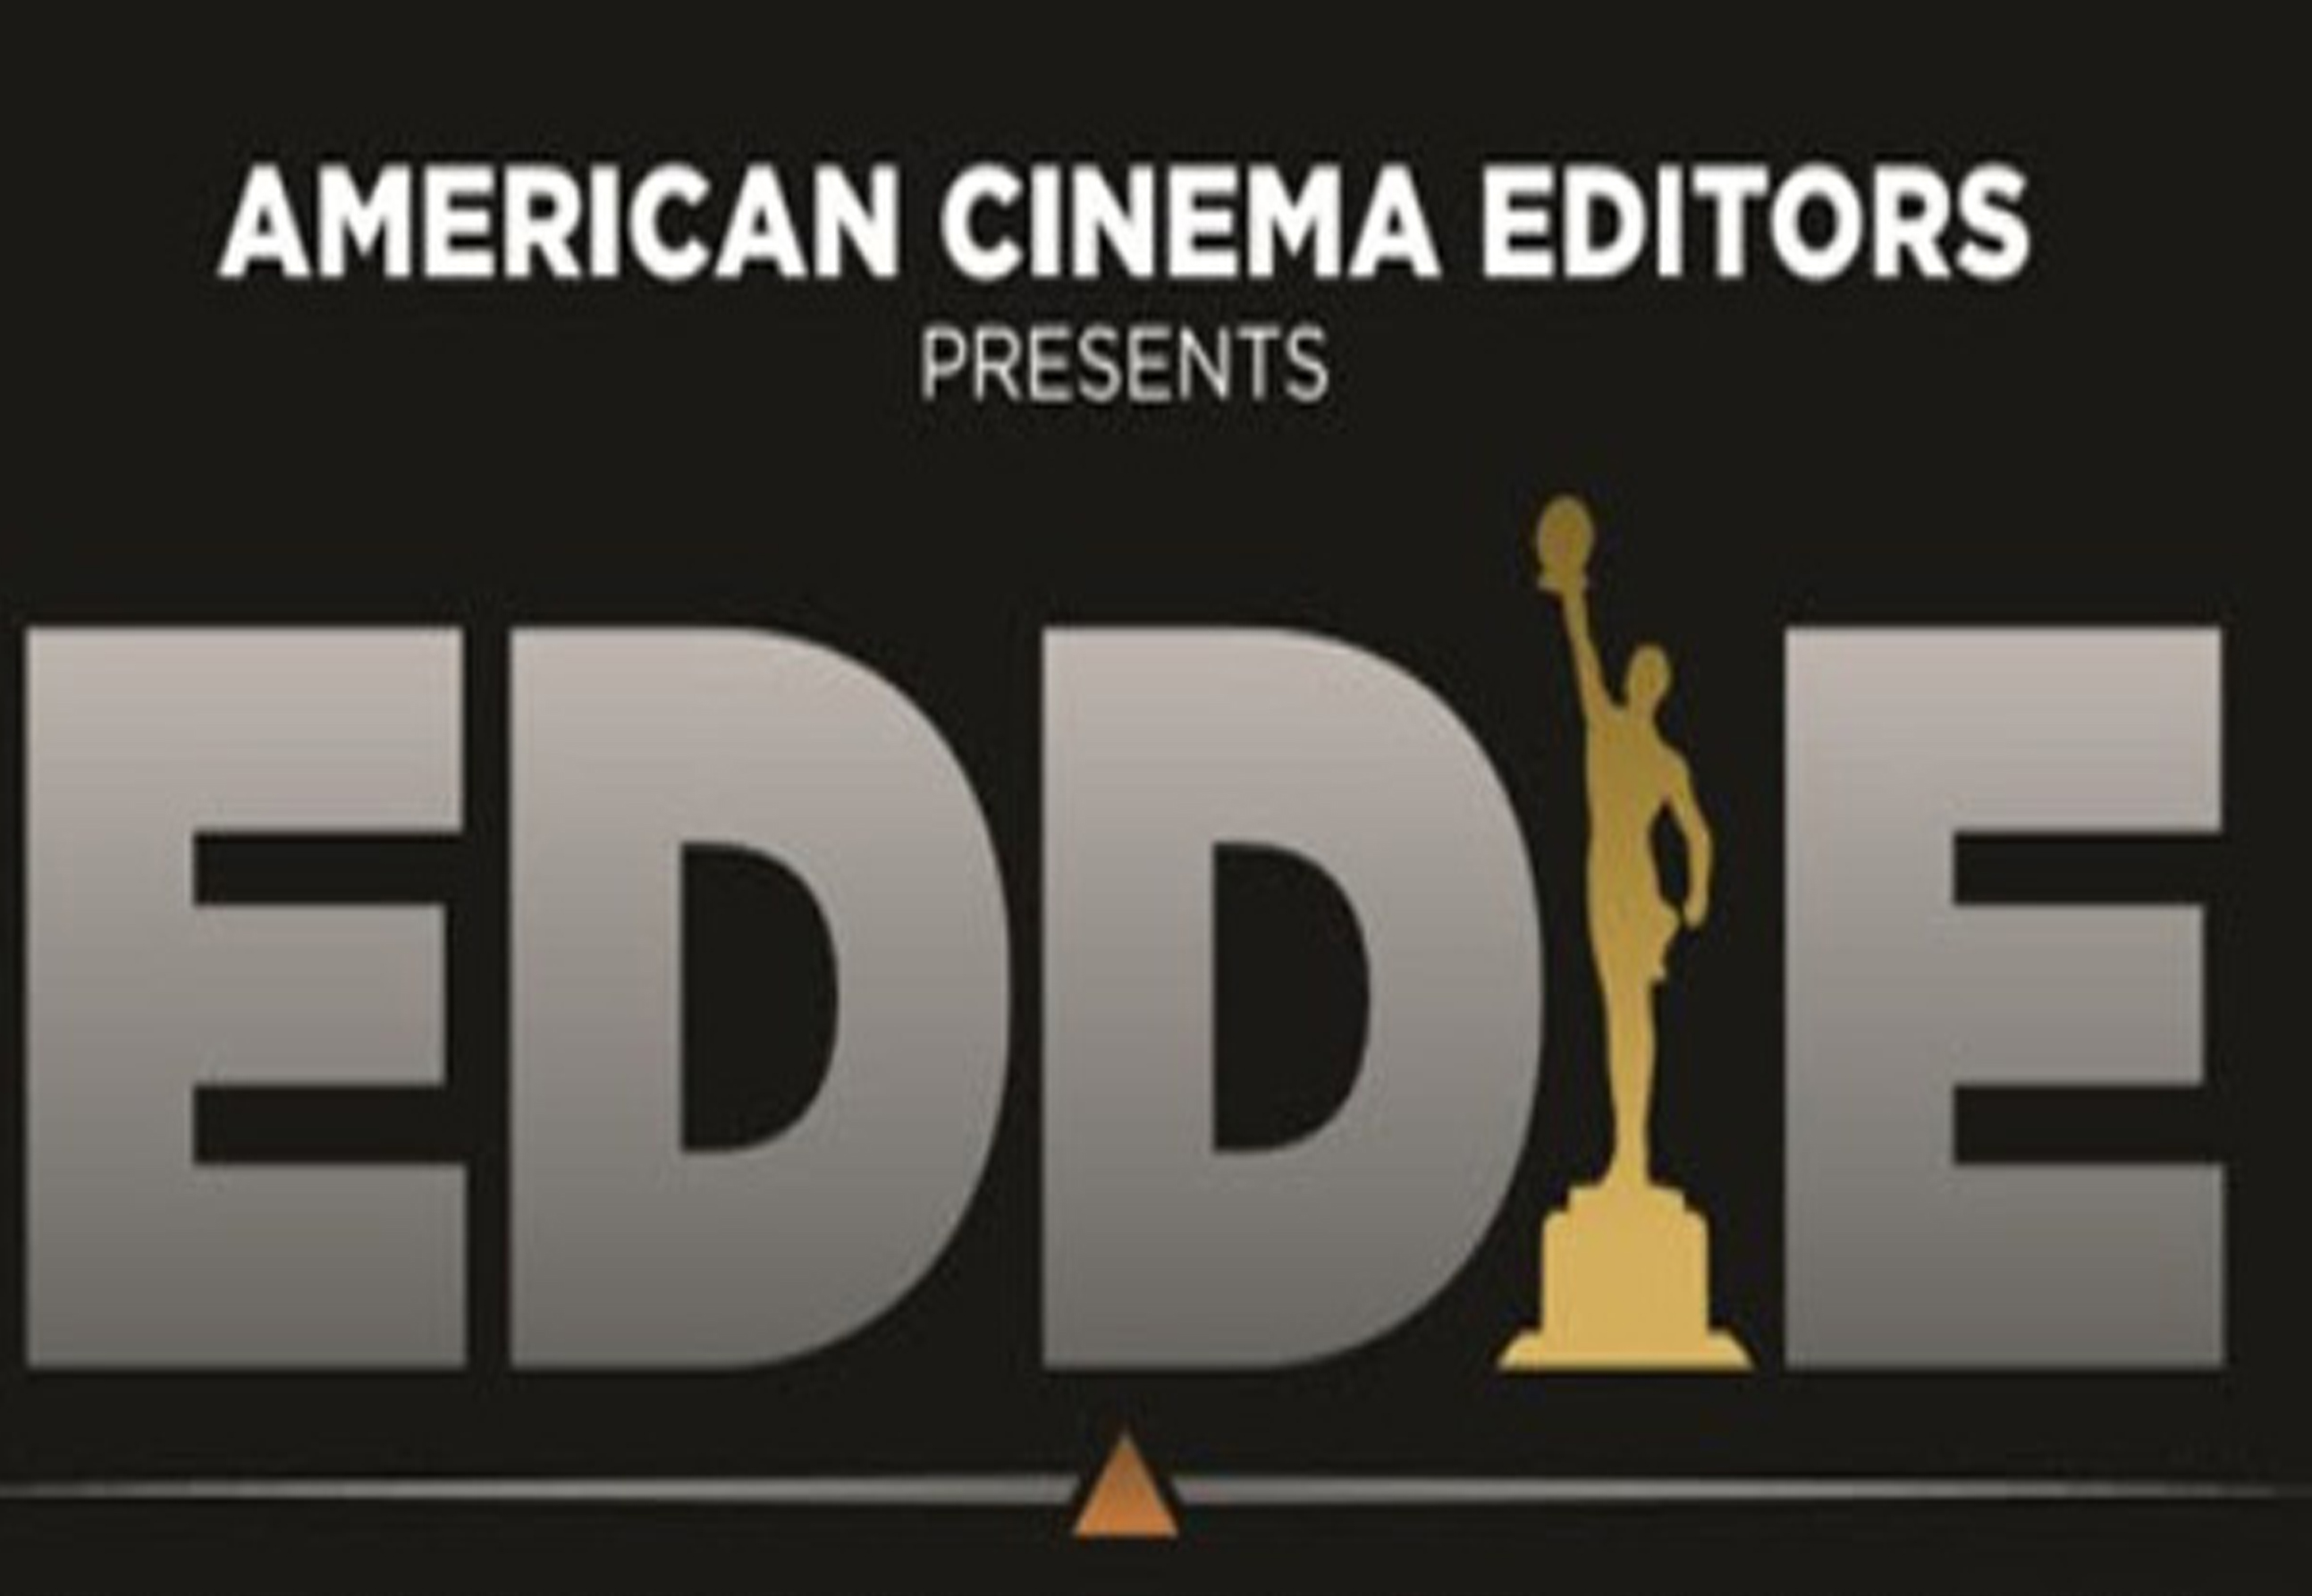 Eddie Awards: Lauren Shuler Donner &amp; Others Set For ACE Career Honors - deadline.com - USA